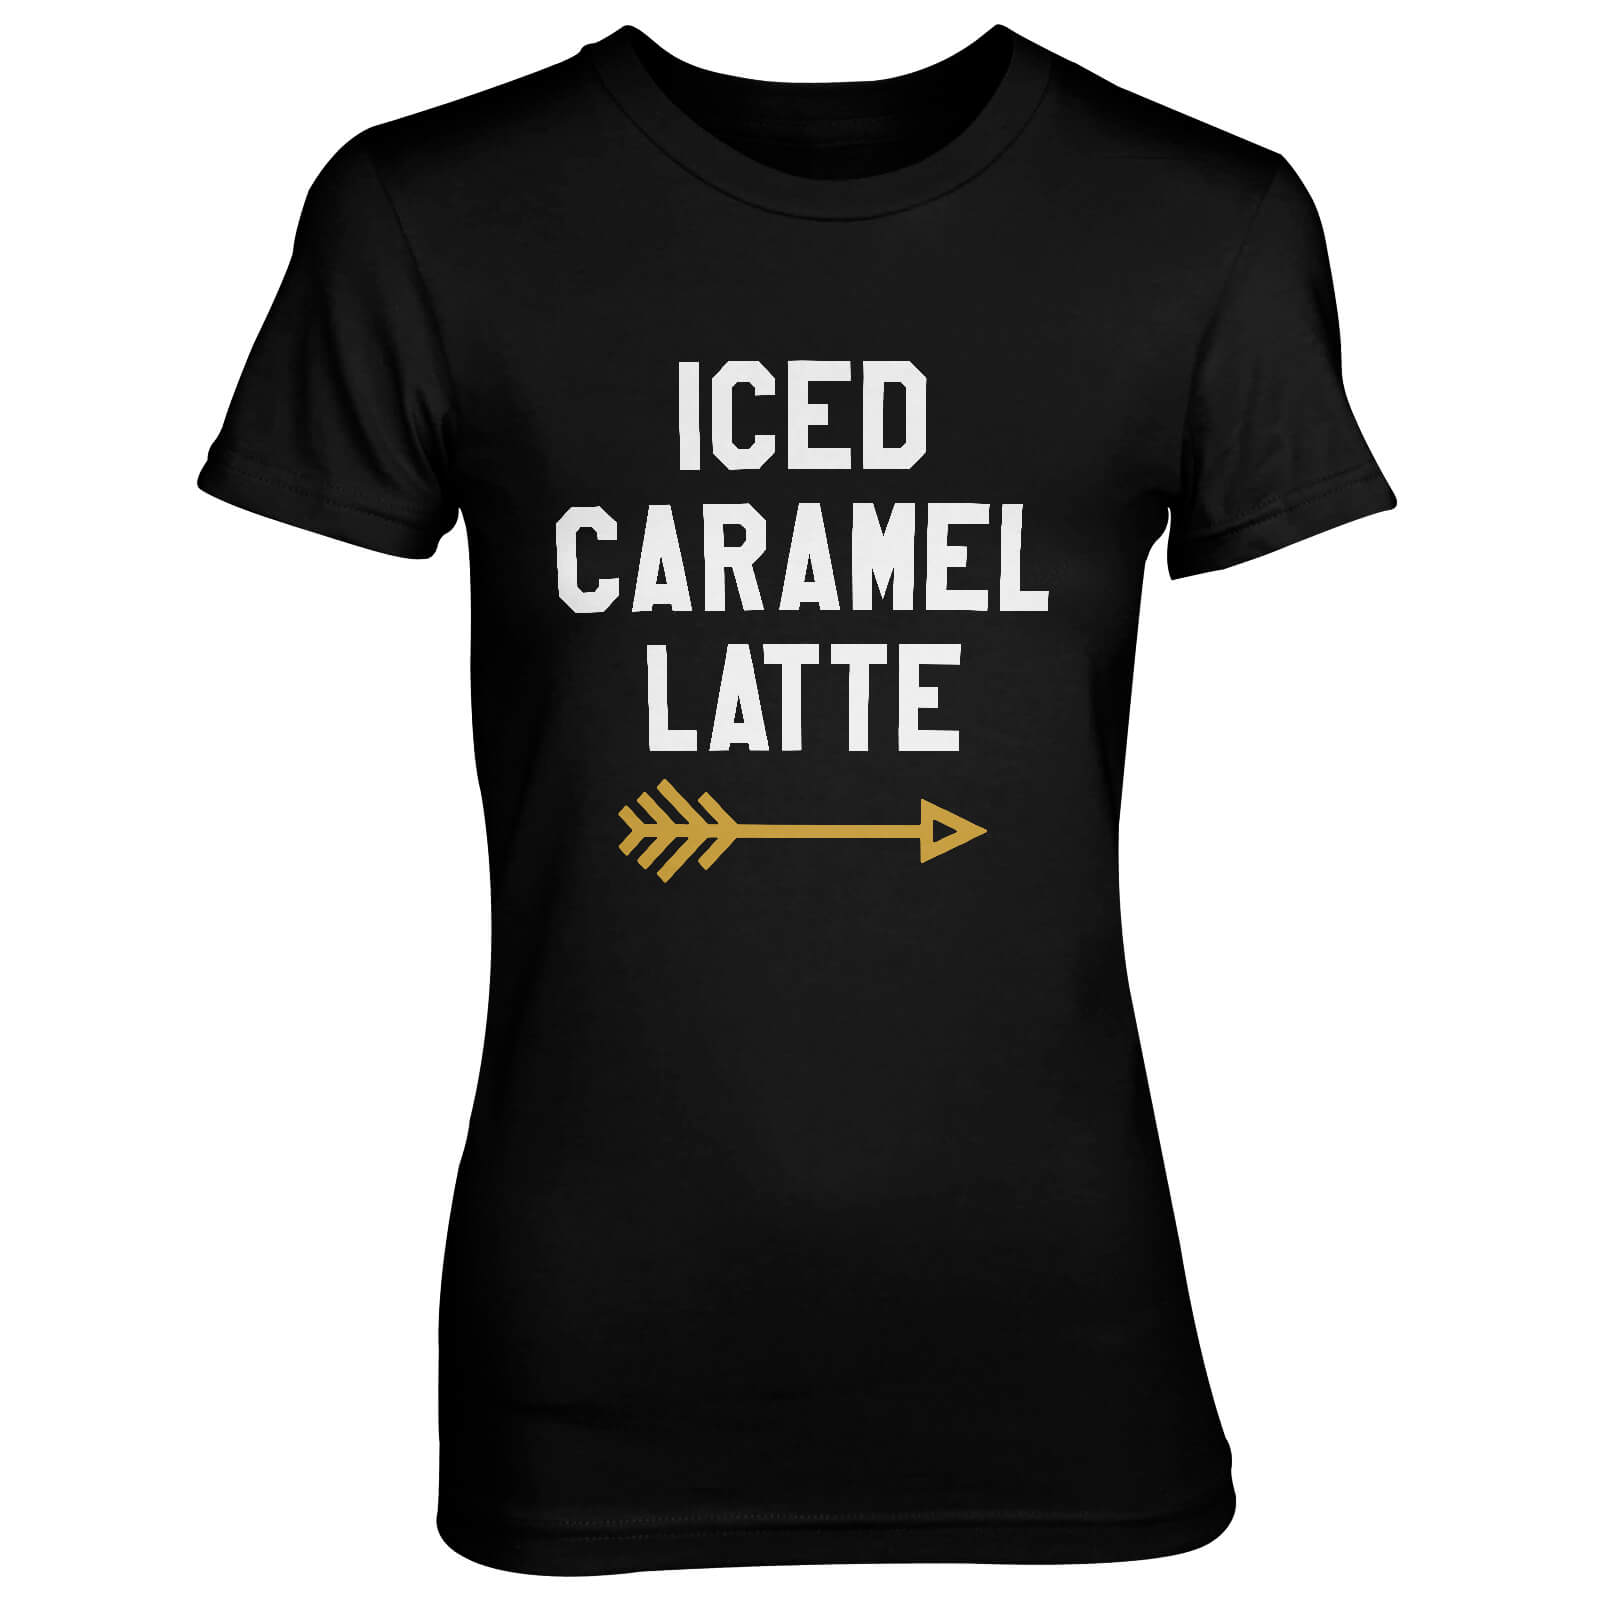 Iced Caramel Latte Women's Black T-Shirt - S - Black